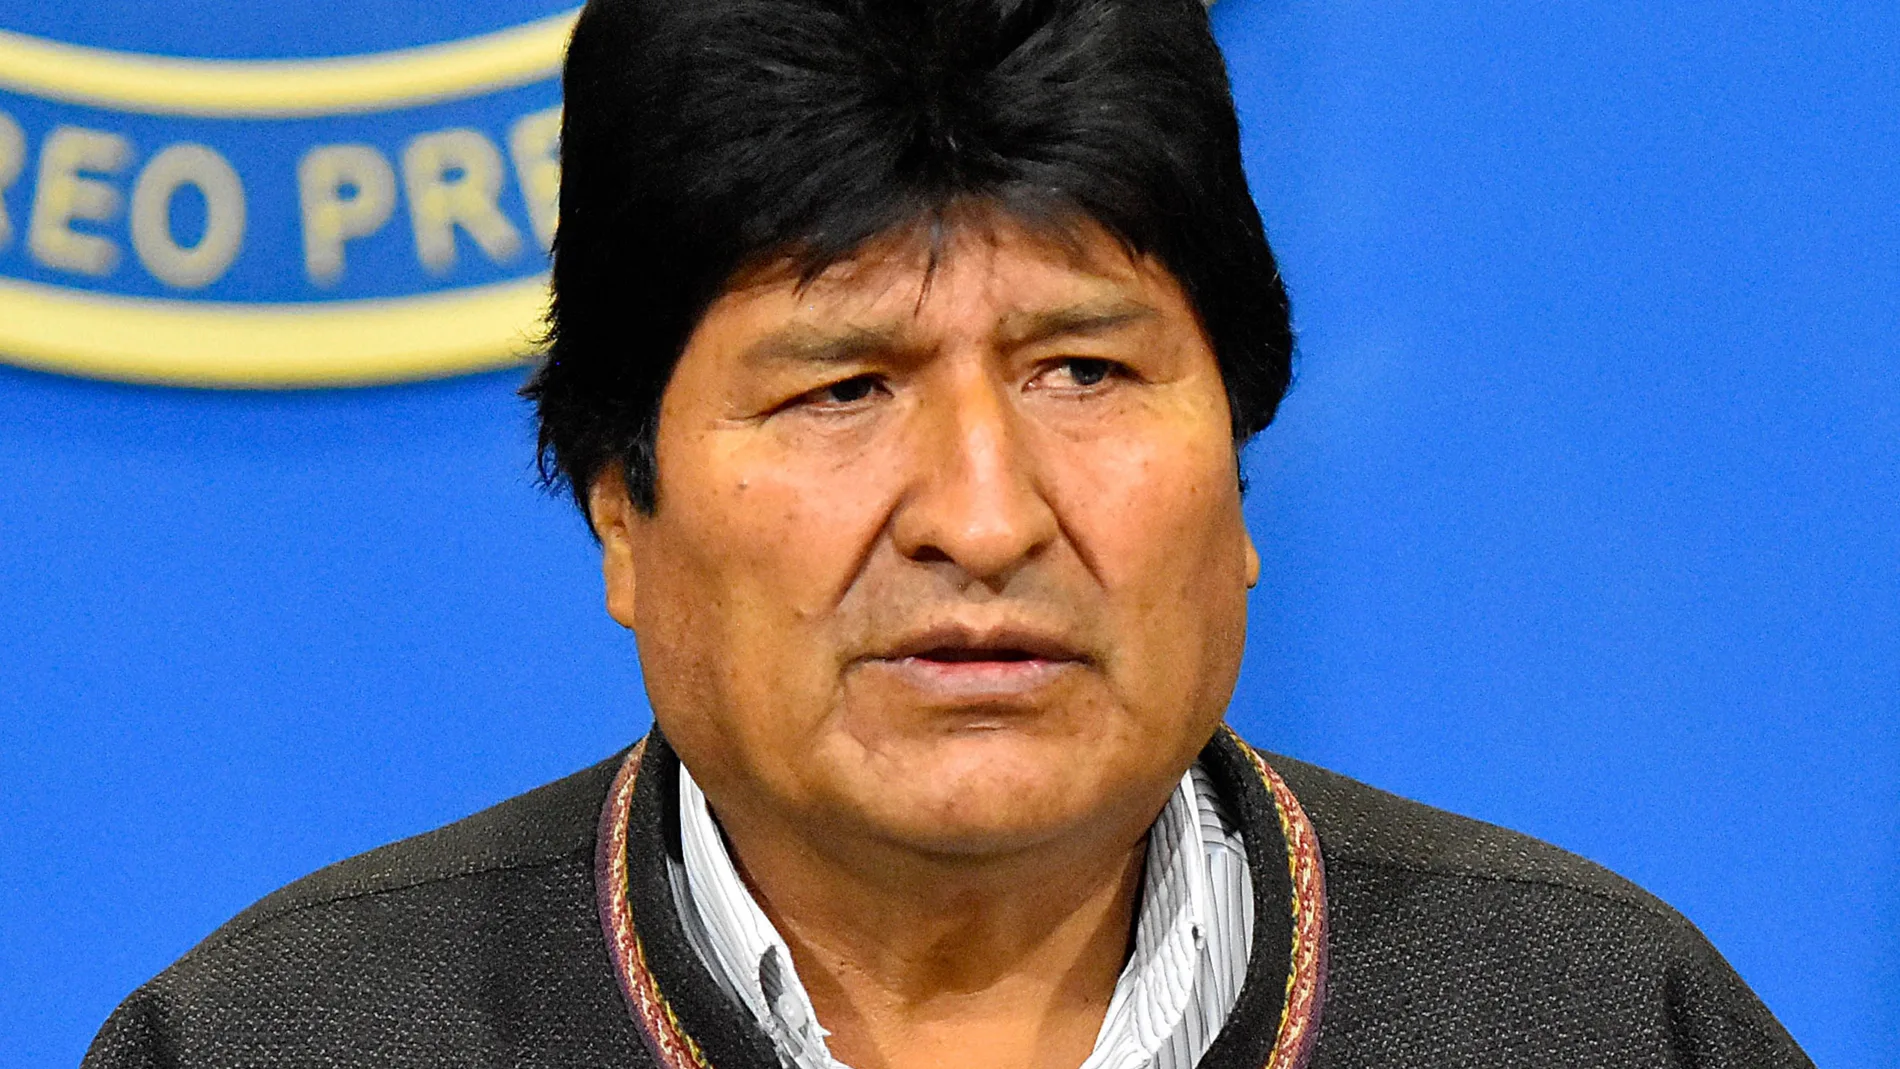 El presidente de Bolivia, Evo Morales, habla durante una breve comparecencia en la mañana de este domingo, en el hangar presidencial de El Alto (Bolivia). Morales confirmó en la tarde del mismo día que renuncia a la Presidencia después de casi 14 años en el poder, en un video desde algún lugar del país.